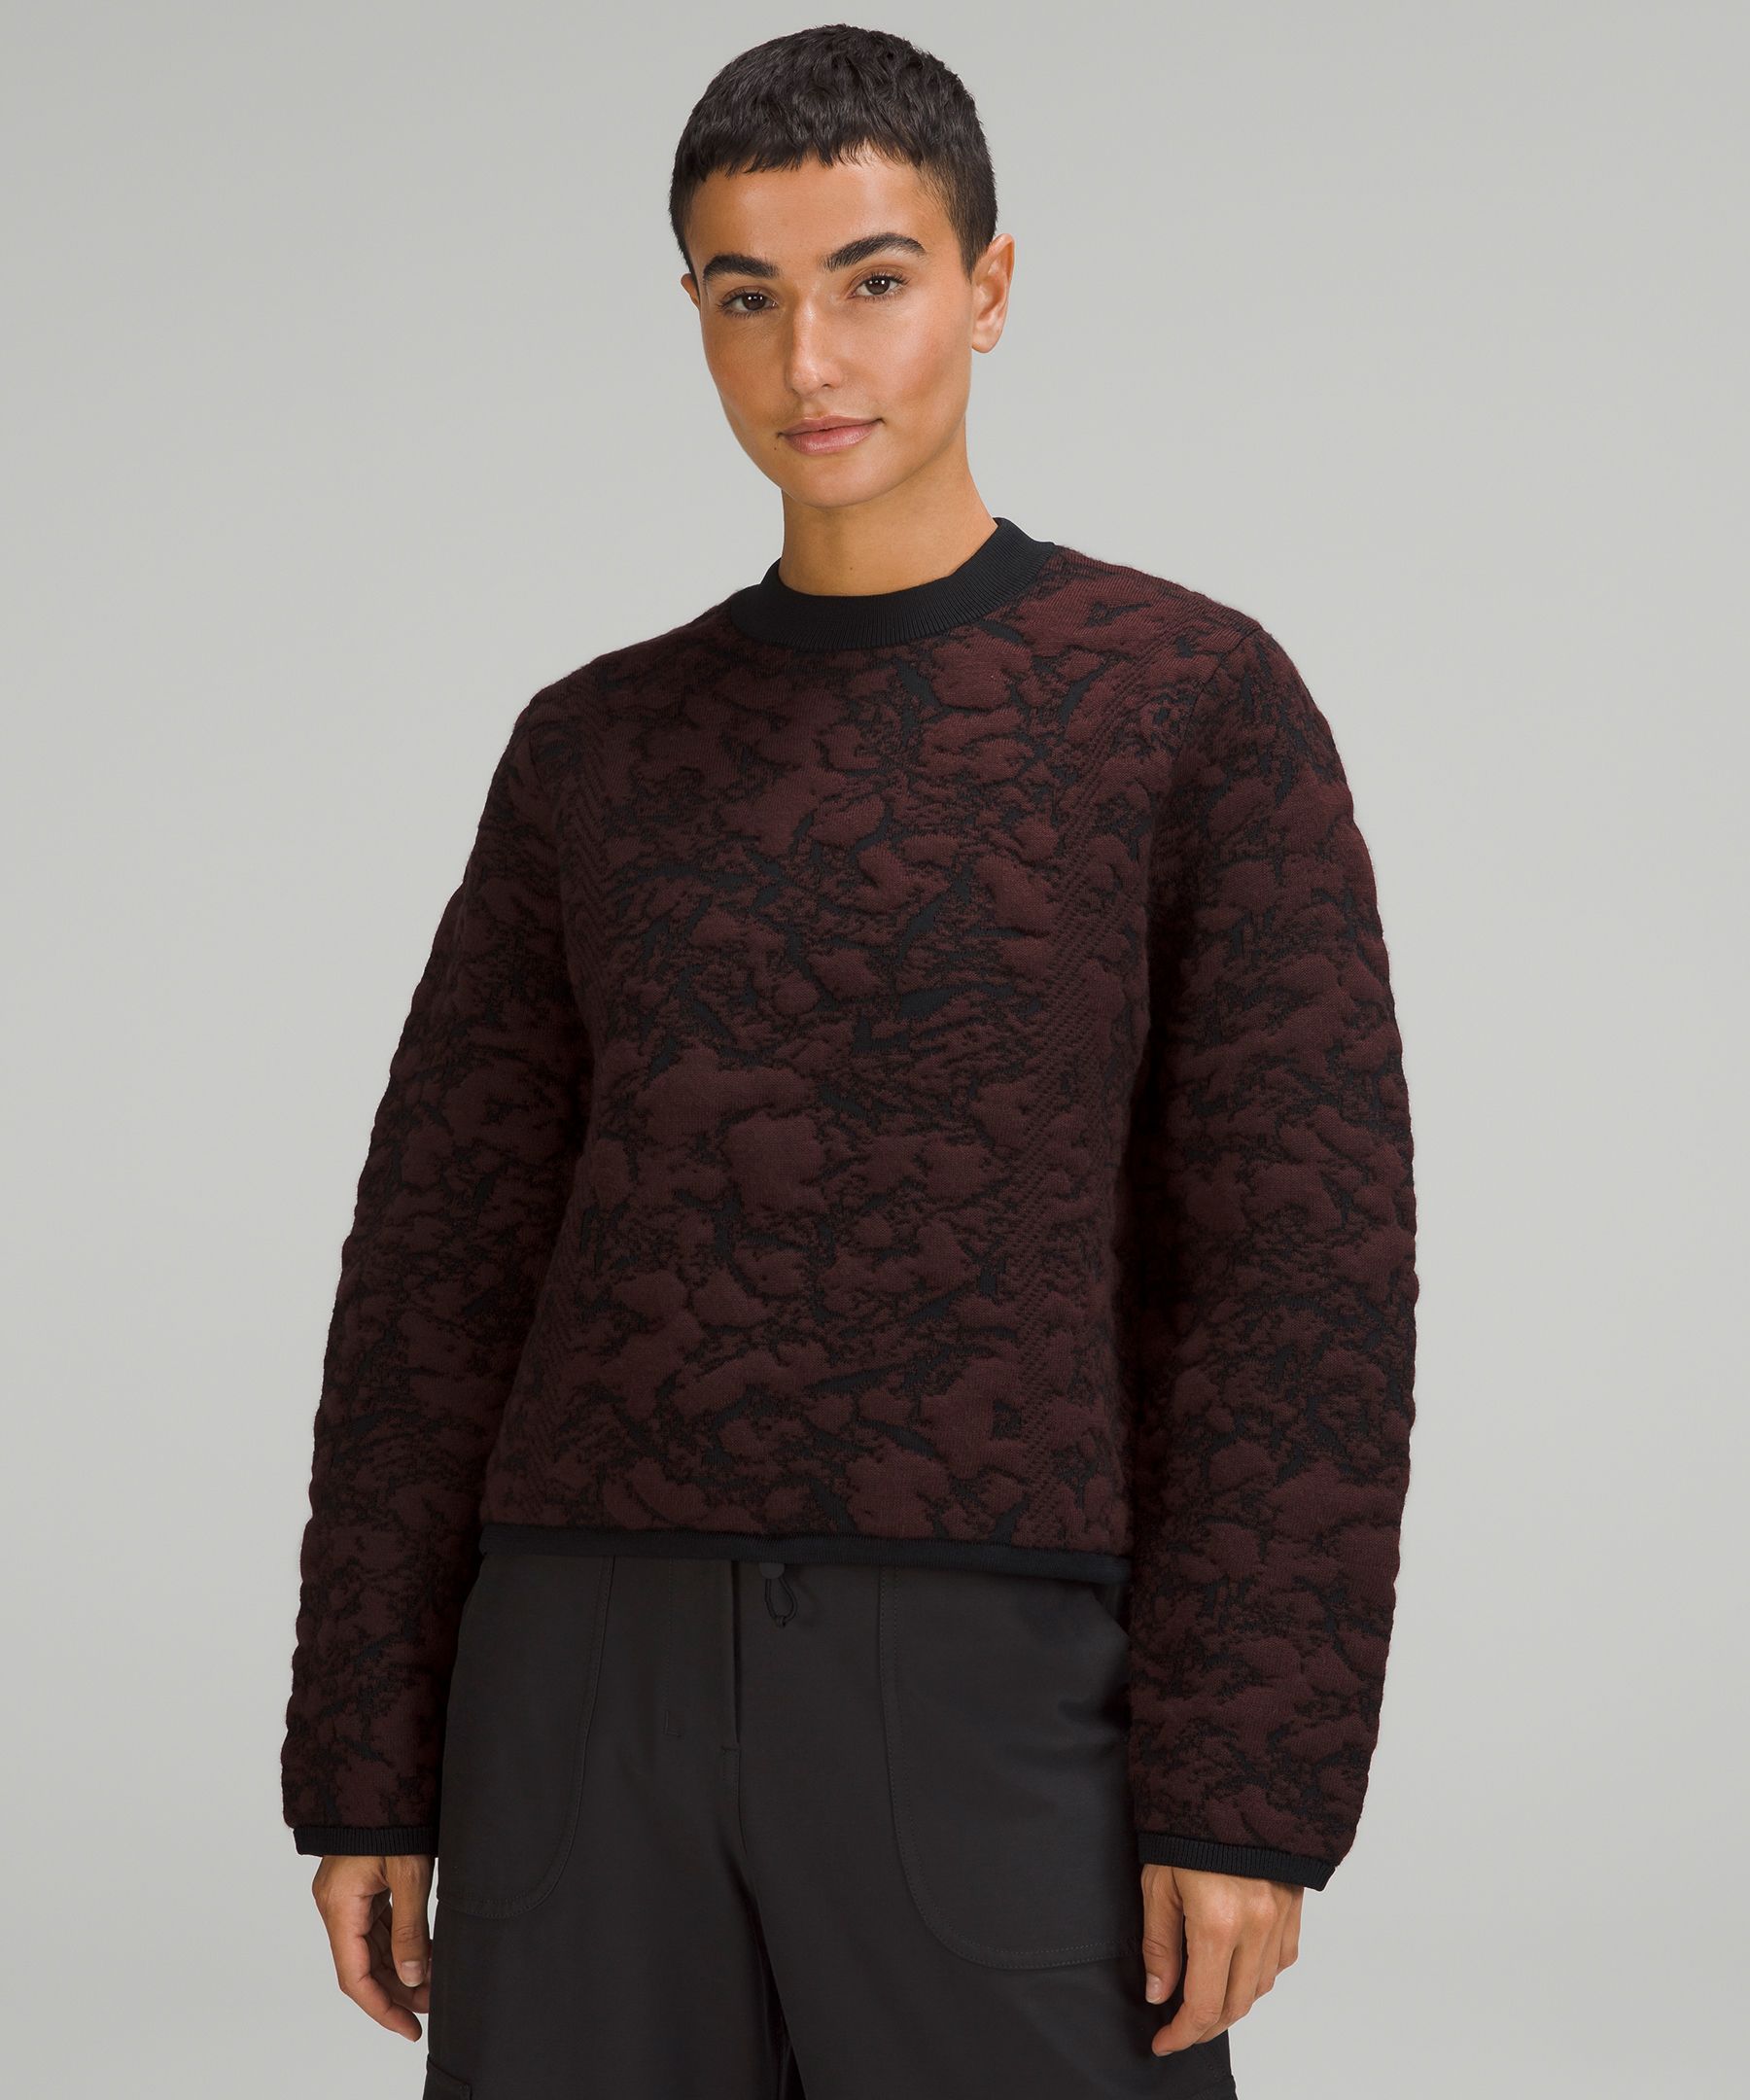 Jacquard Multi-Texture Crewneck Sweater